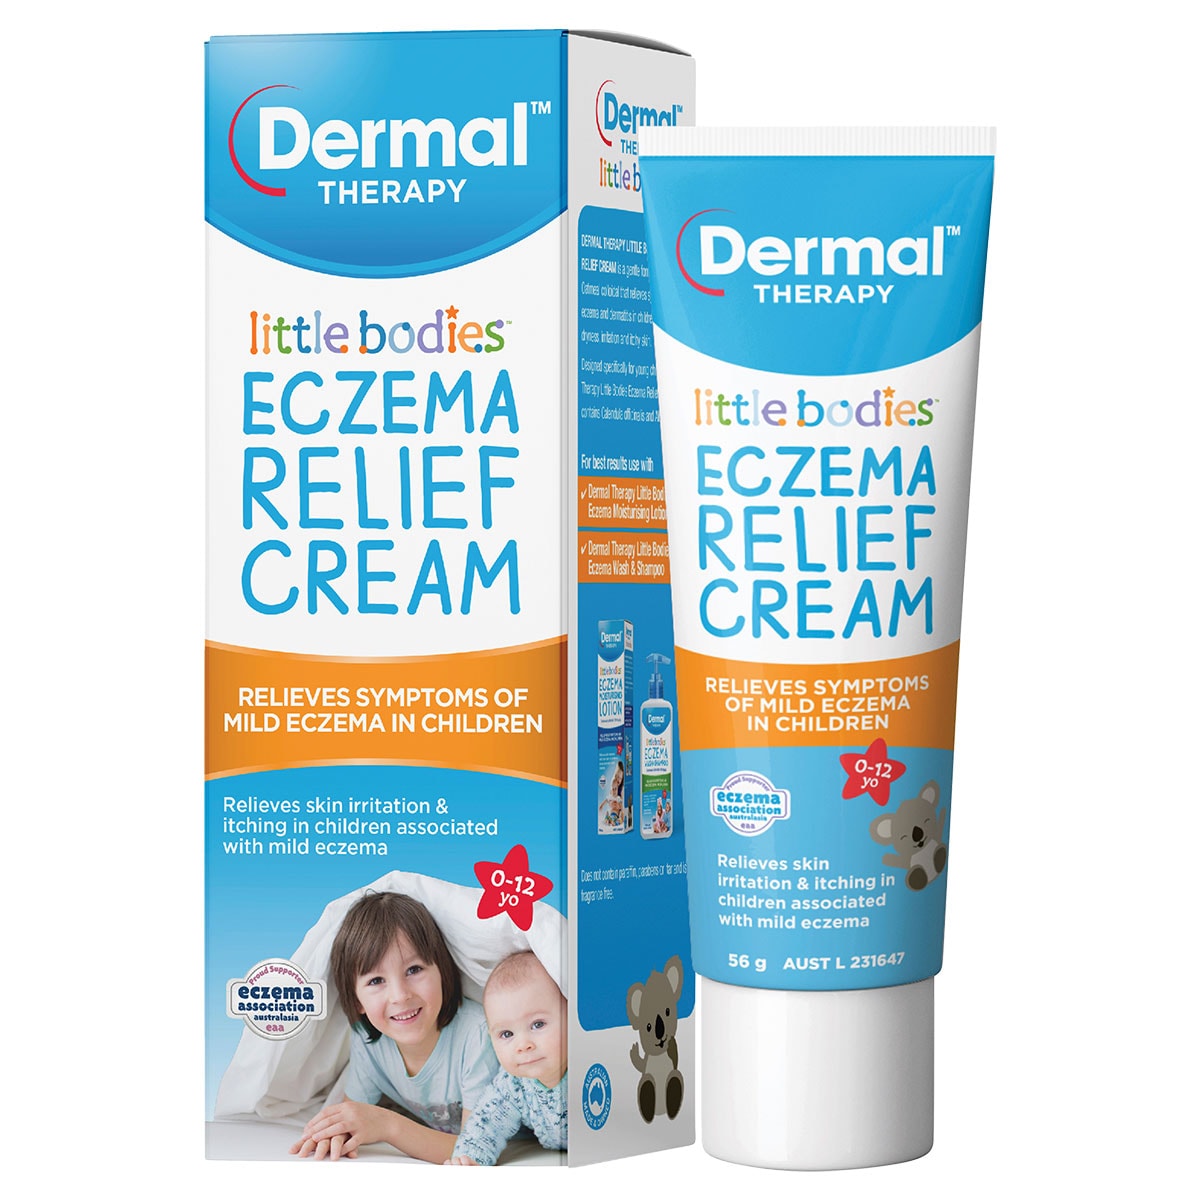 Dermal Therapy Little Bodies Eczema Relief Cream 56g